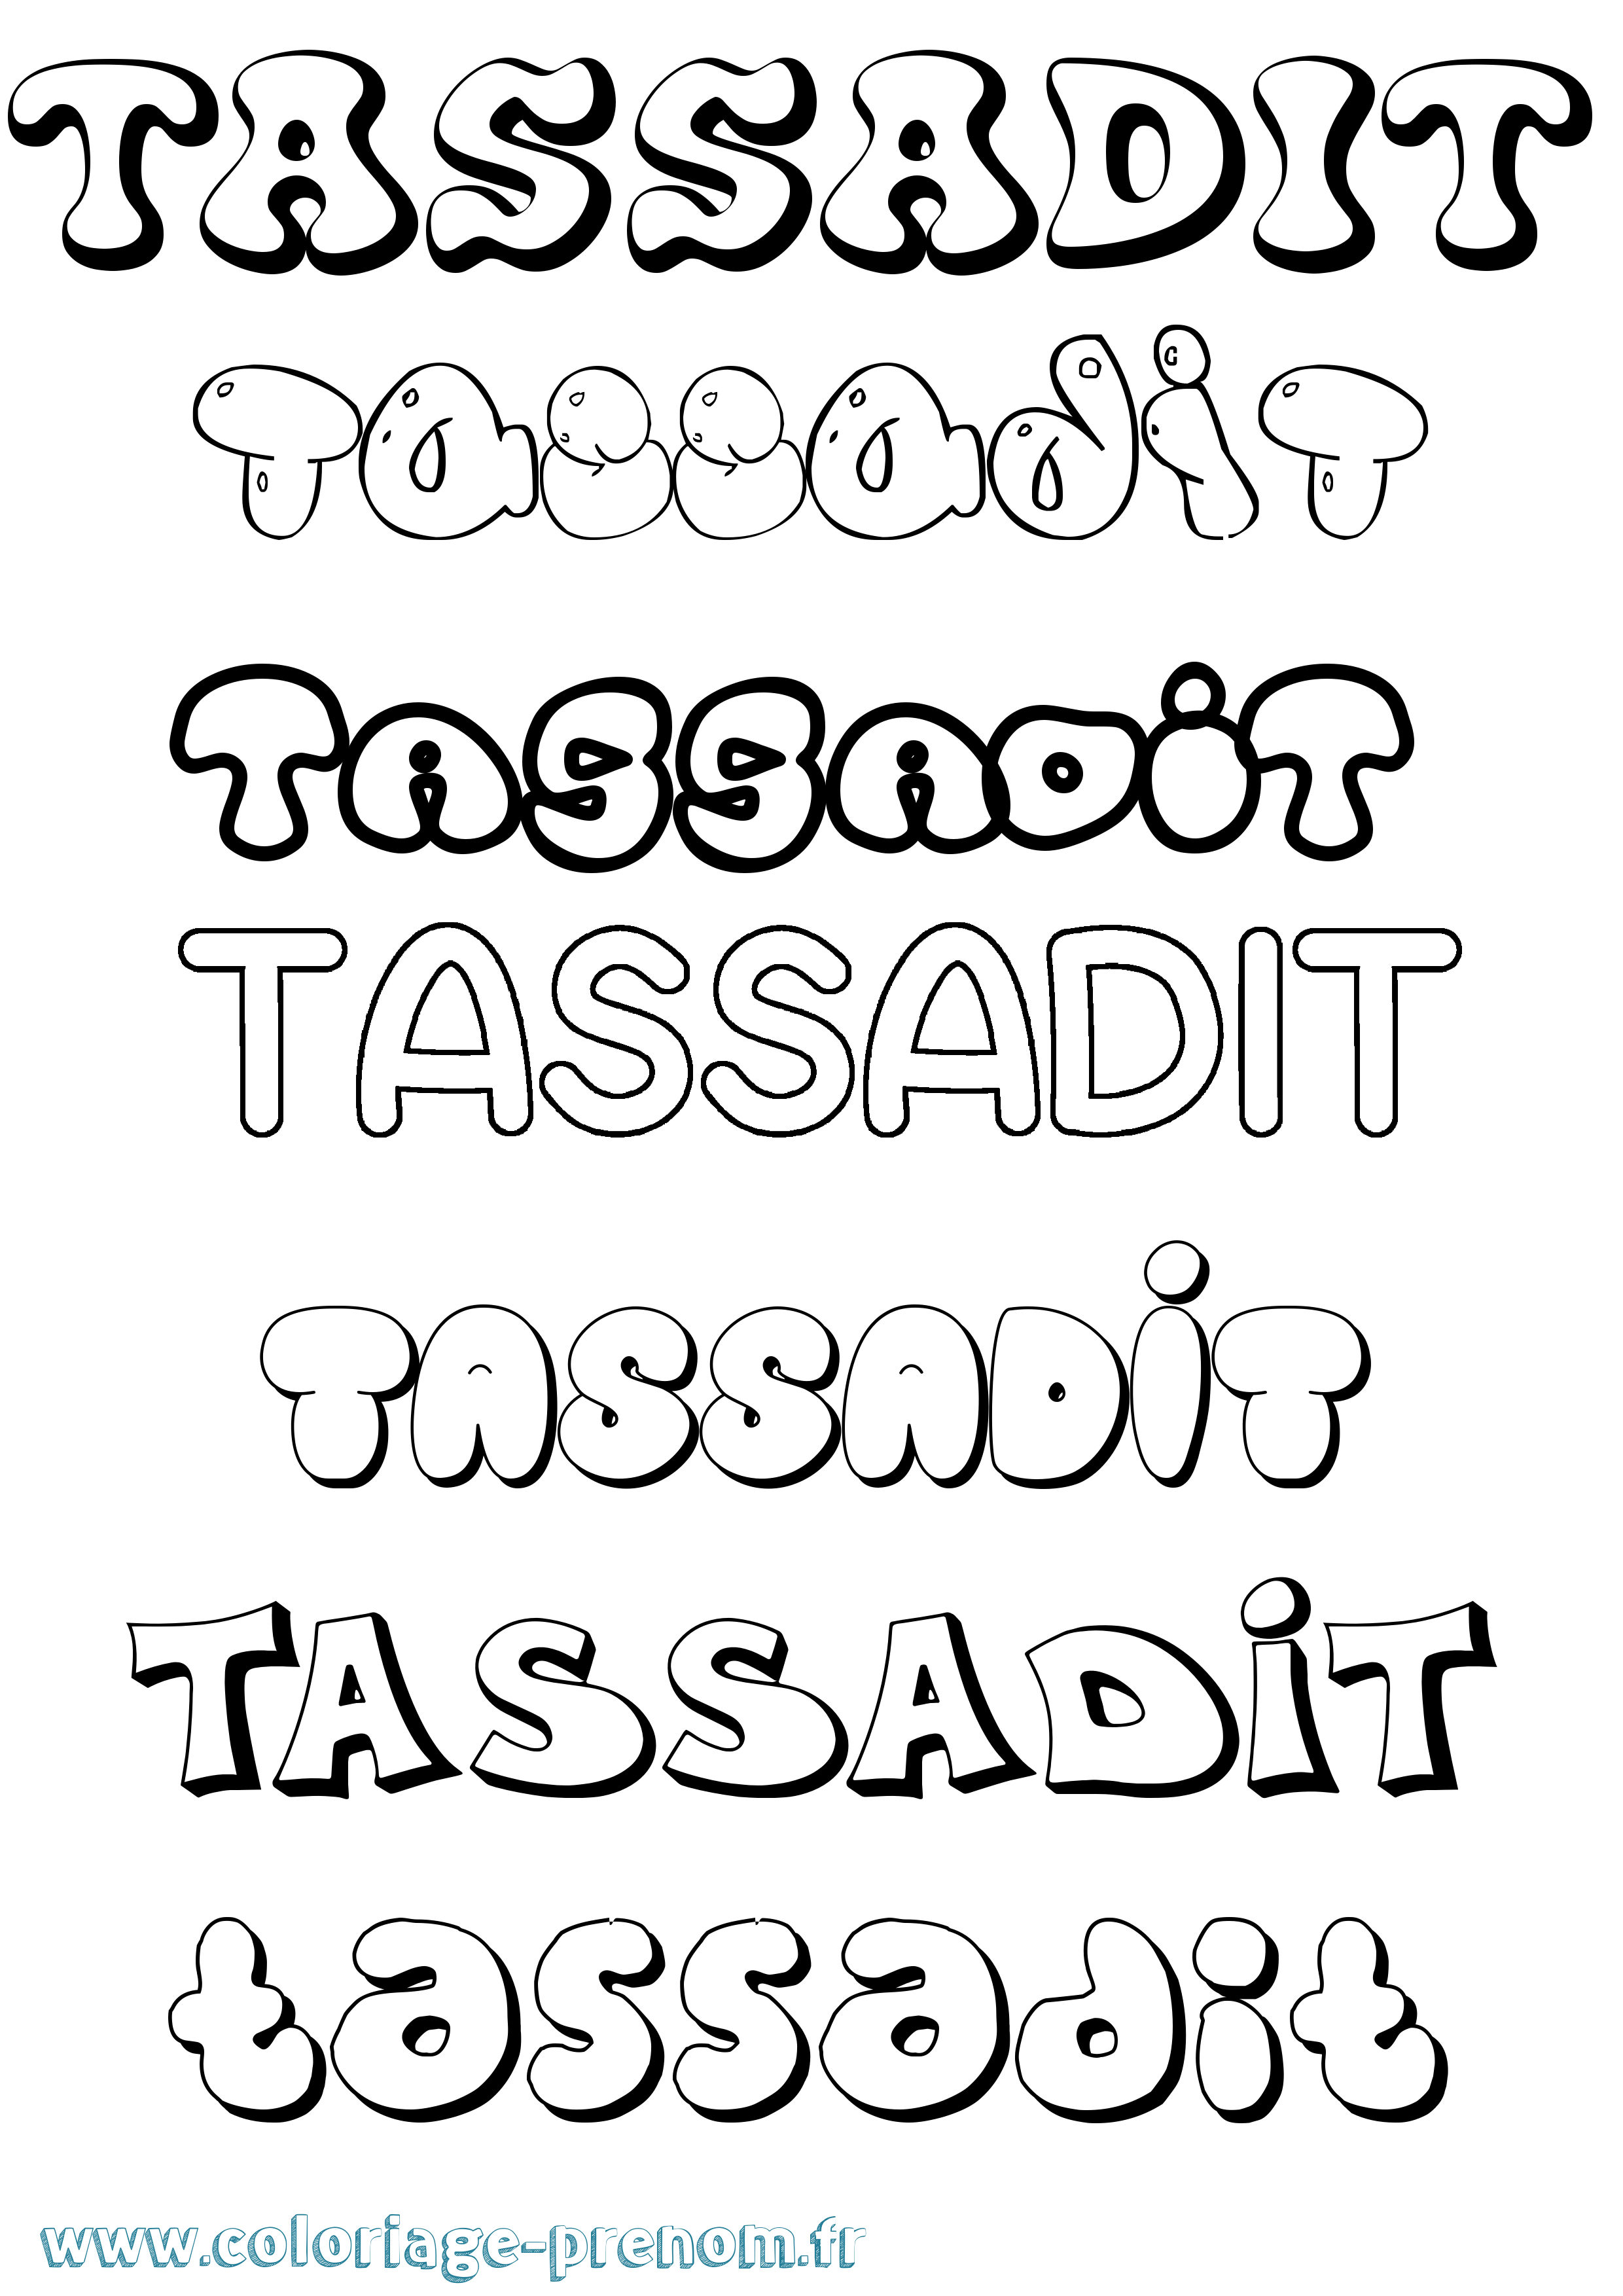 Coloriage prénom Tassadit Bubble